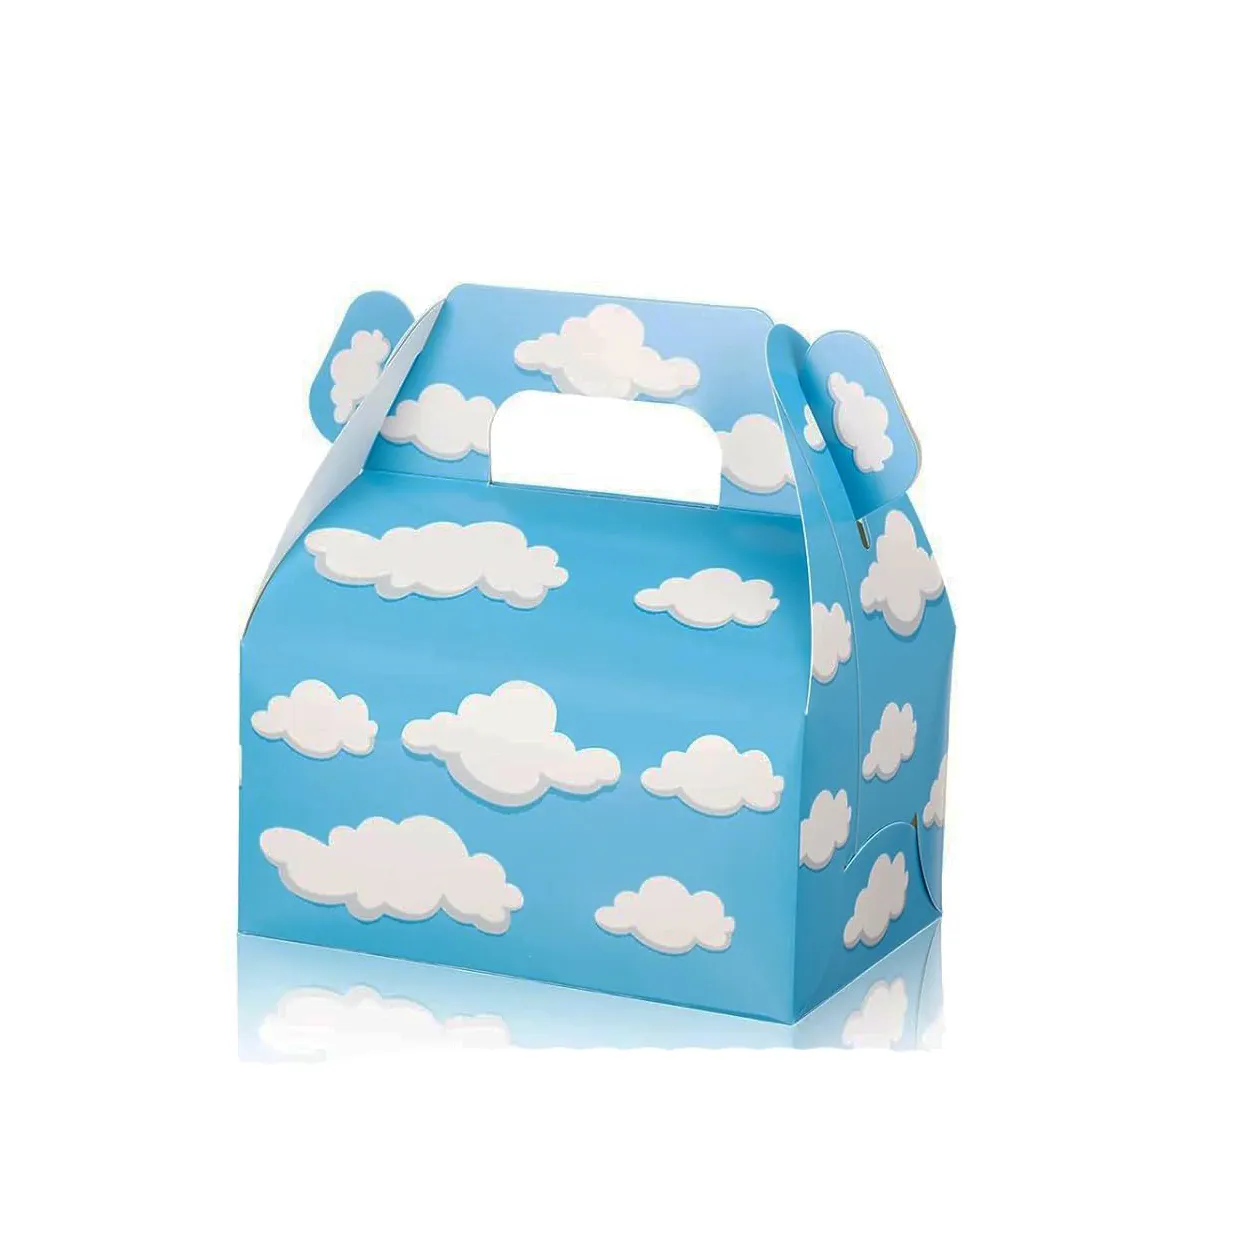 Vente en gros de fournitures de fête d'anniversaire pour enfants Emballage en carton de bonbons Conception de motif de nuage bleu blanc Portable pour enfants coffret cadeau